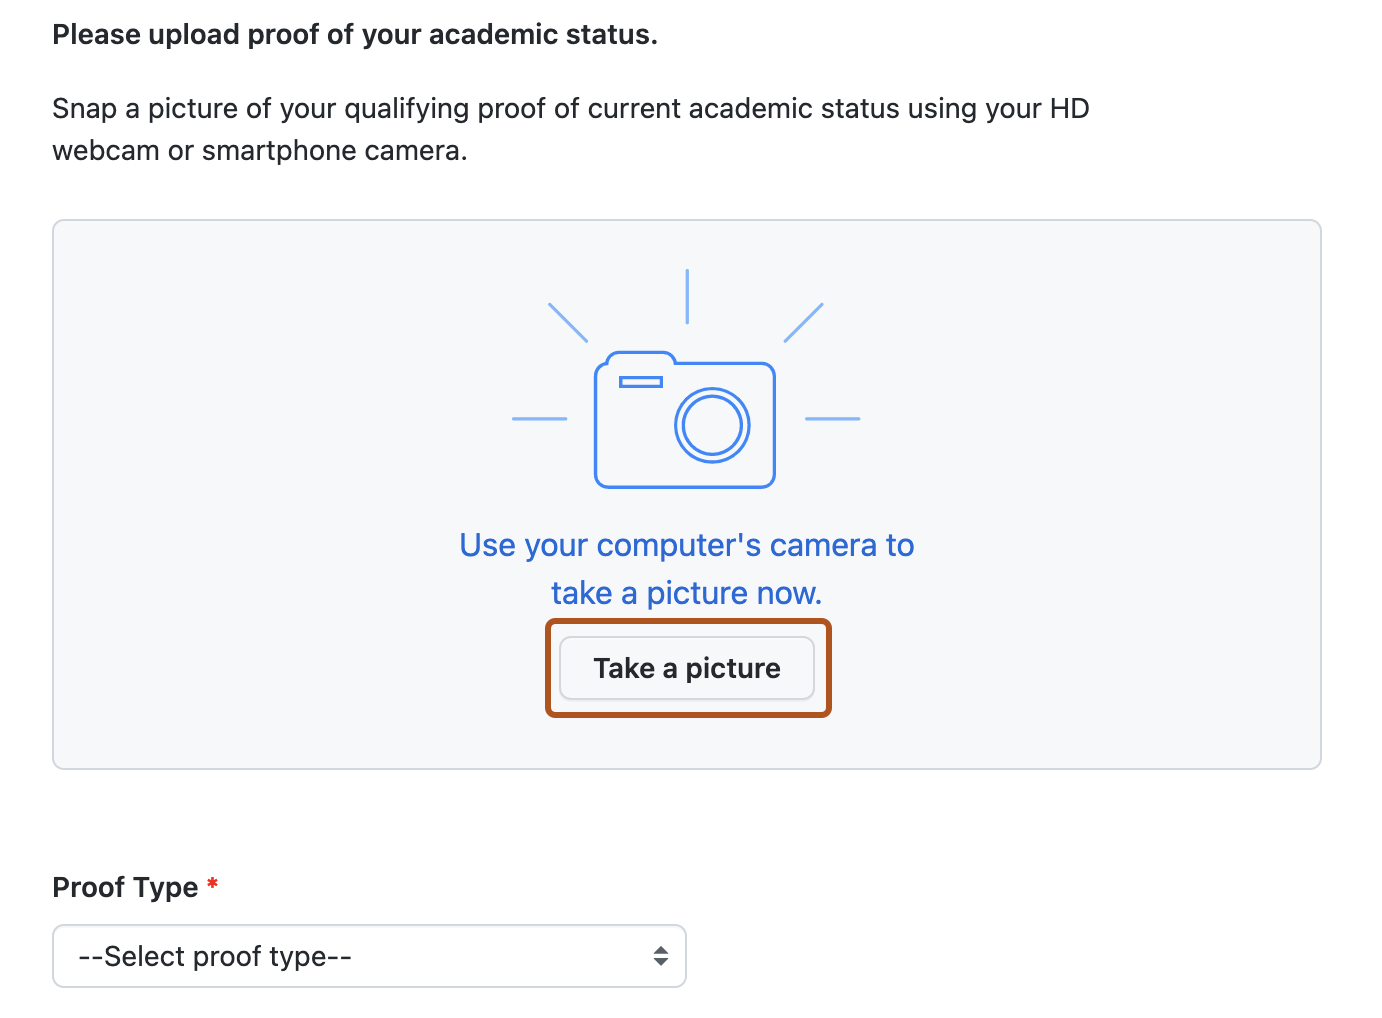 Captura de tela da página usada para fornecer uma prova de foto do seu status acadêmico. O botão "Tirar uma foto" está realçado em laranja escuro.